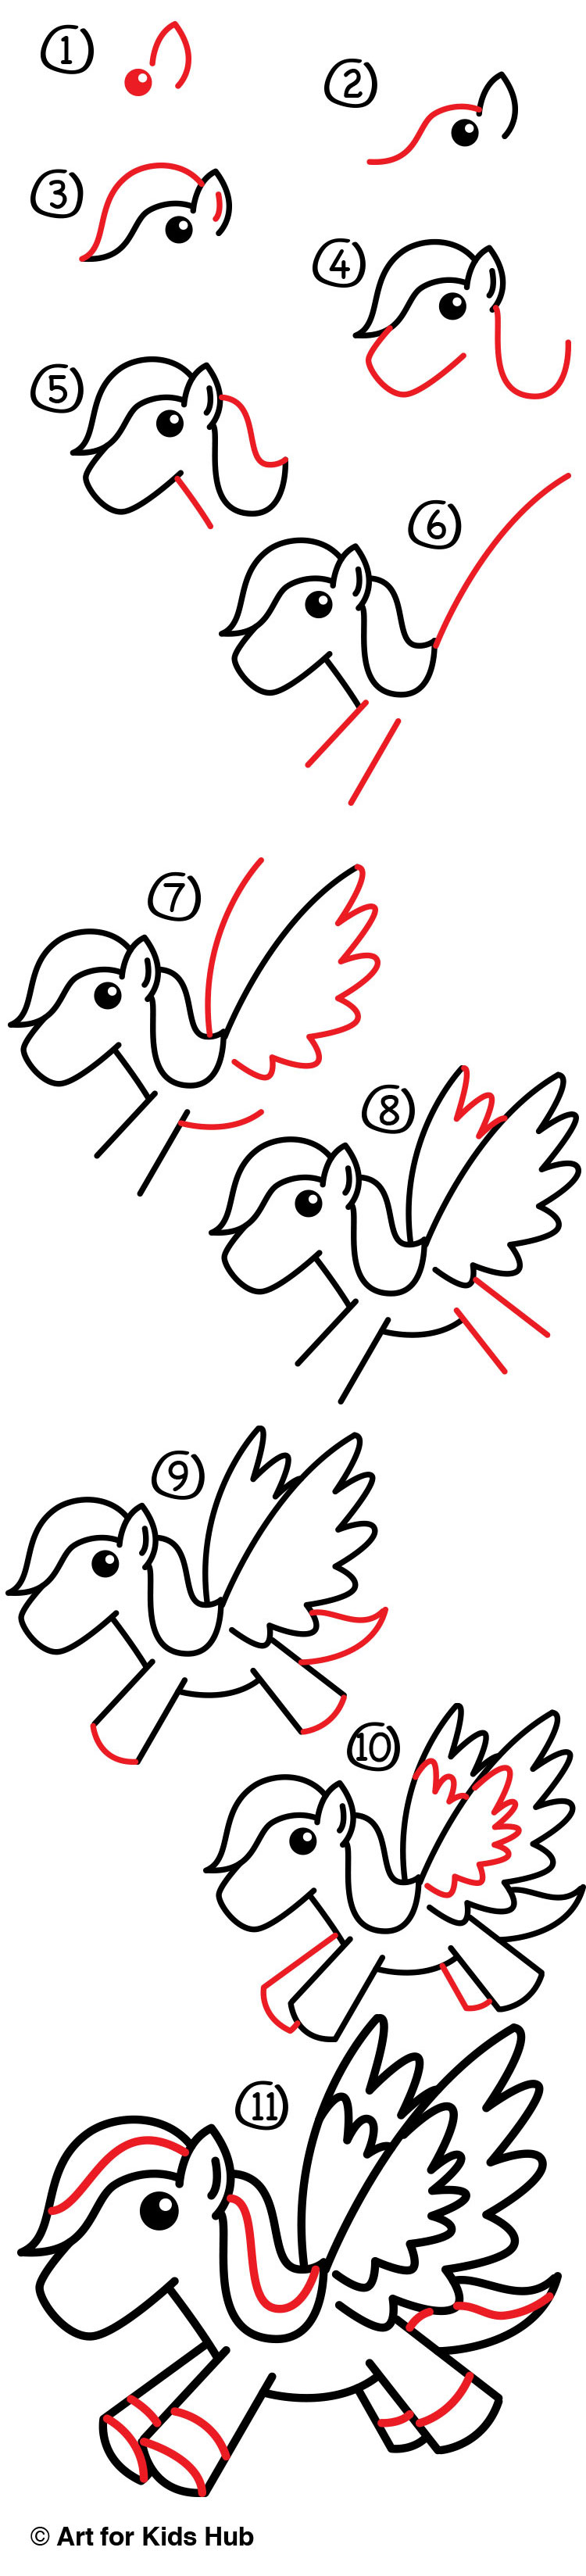 How To Draw A Cartoon Pegasus Art For Kids Hub